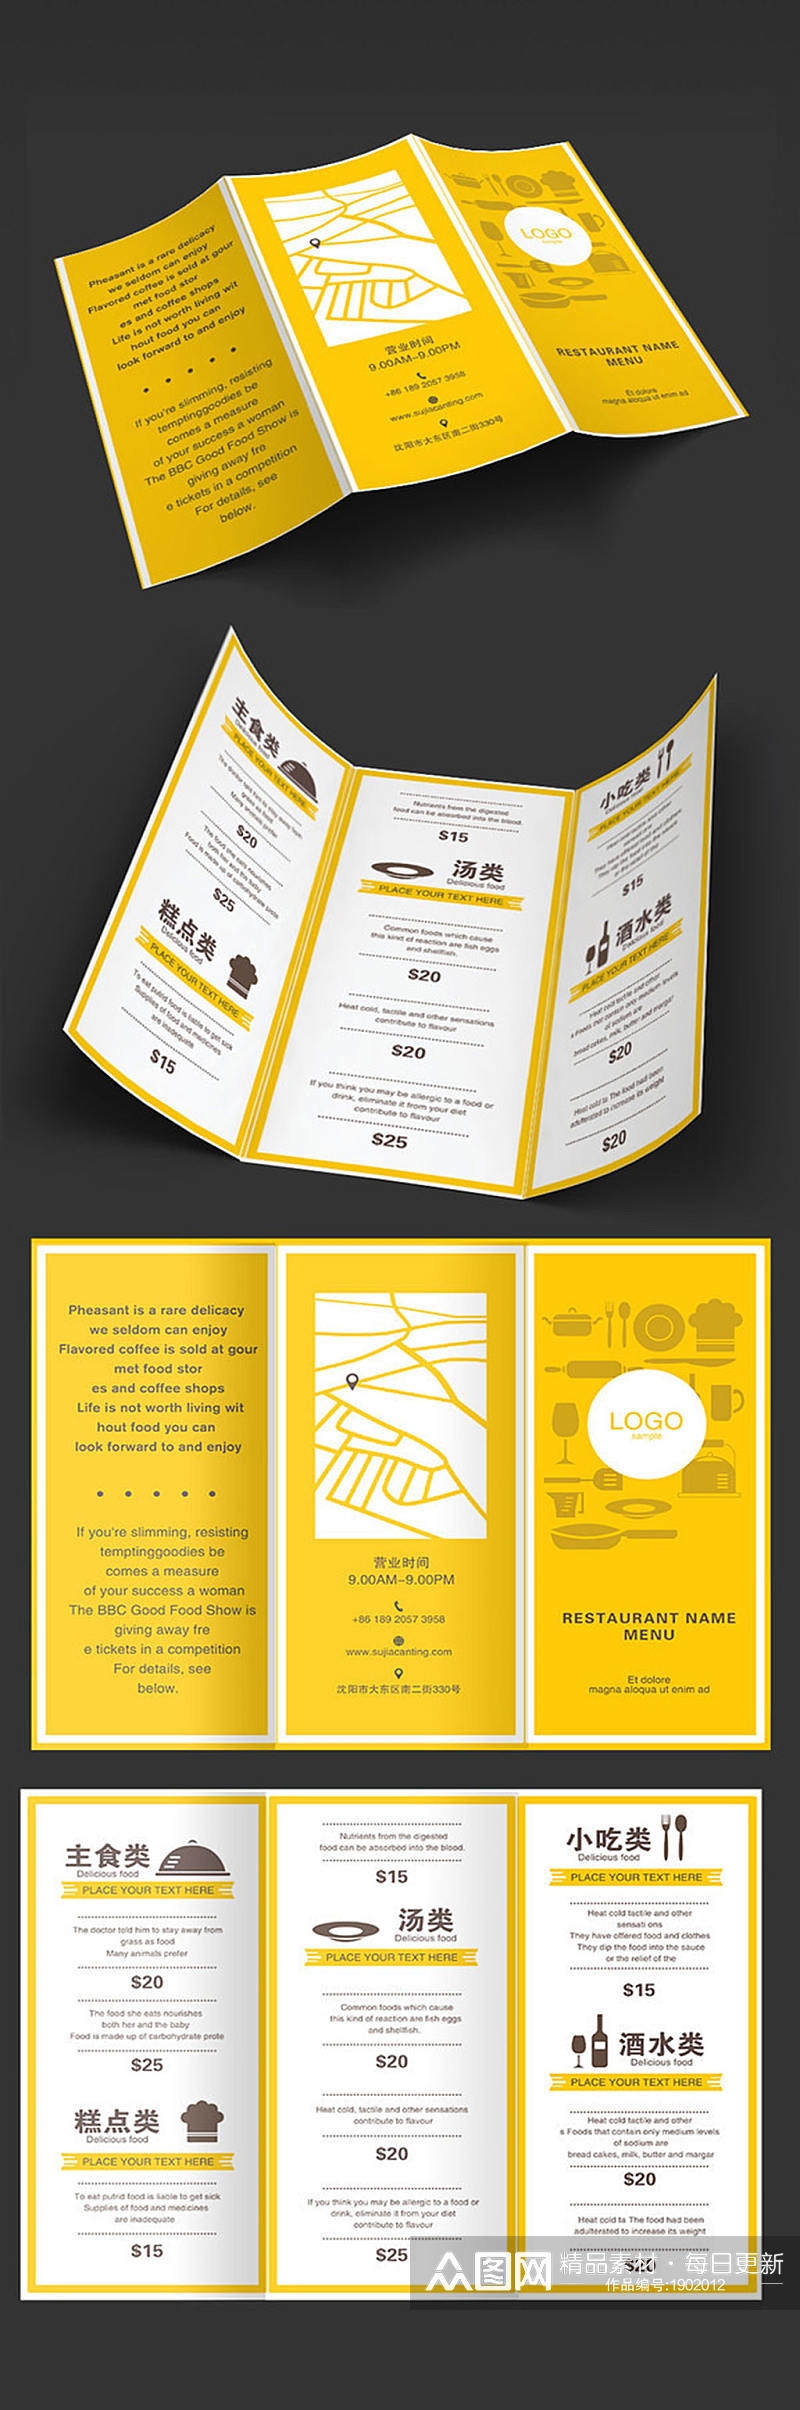 黄色菜单三折页设计素材